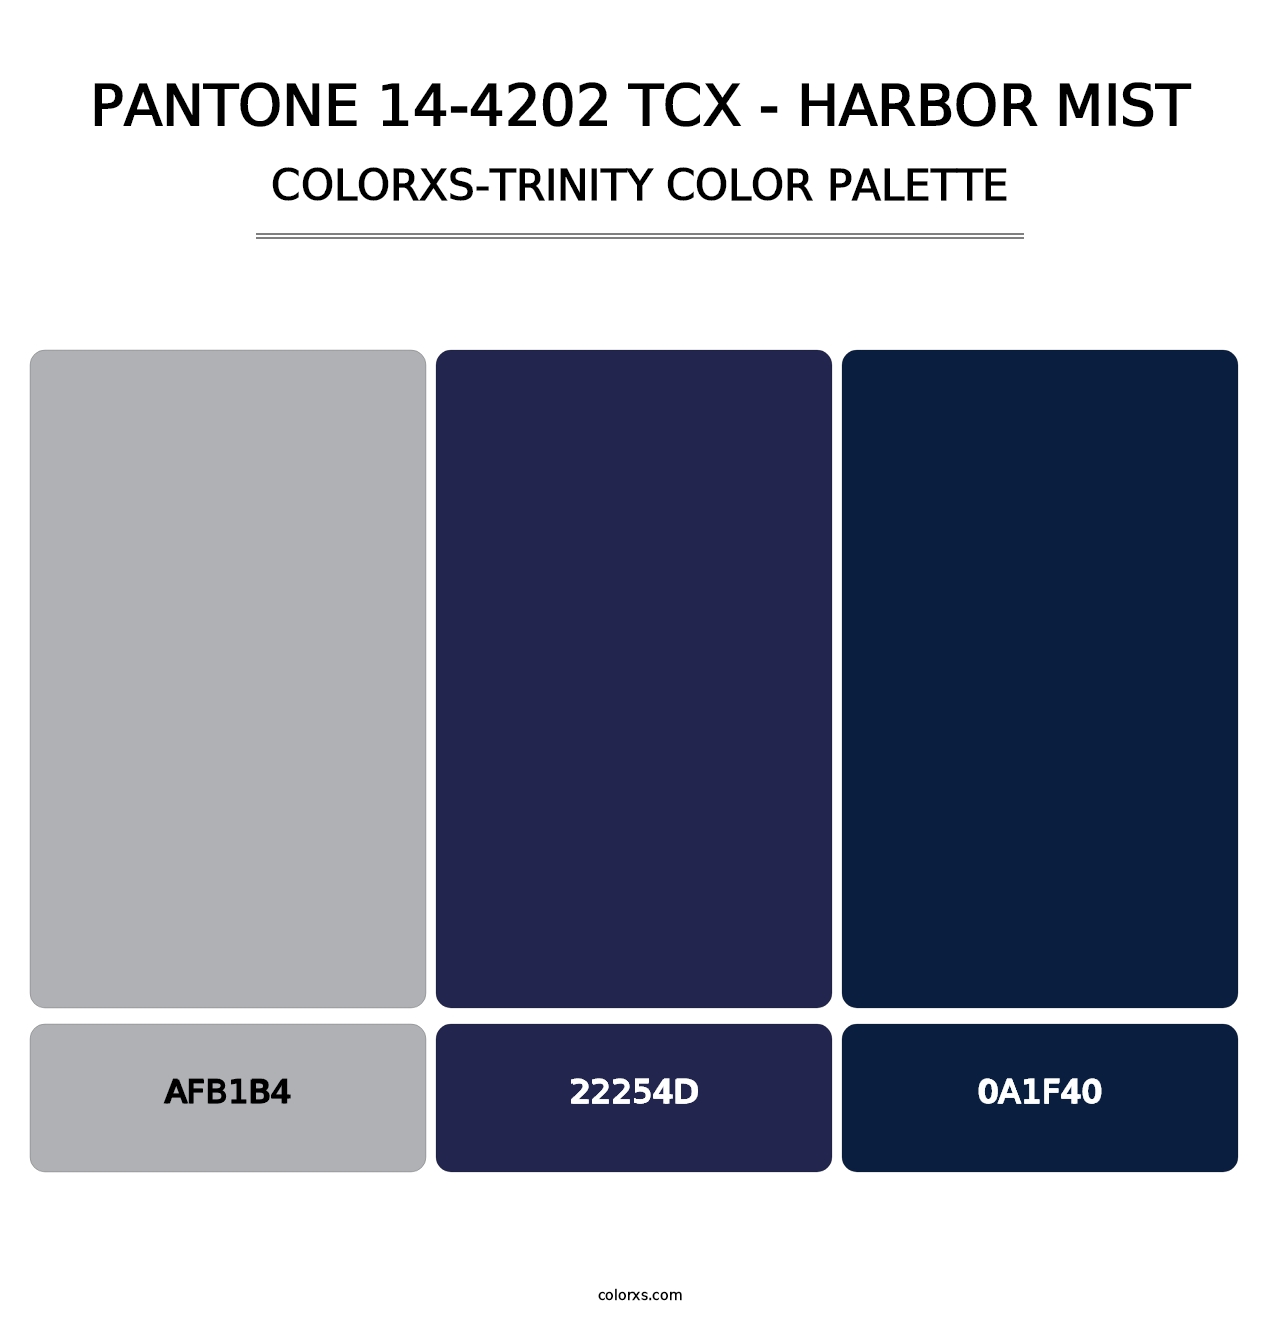 PANTONE 14-4202 TCX - Harbor Mist - Colorxs Trinity Palette